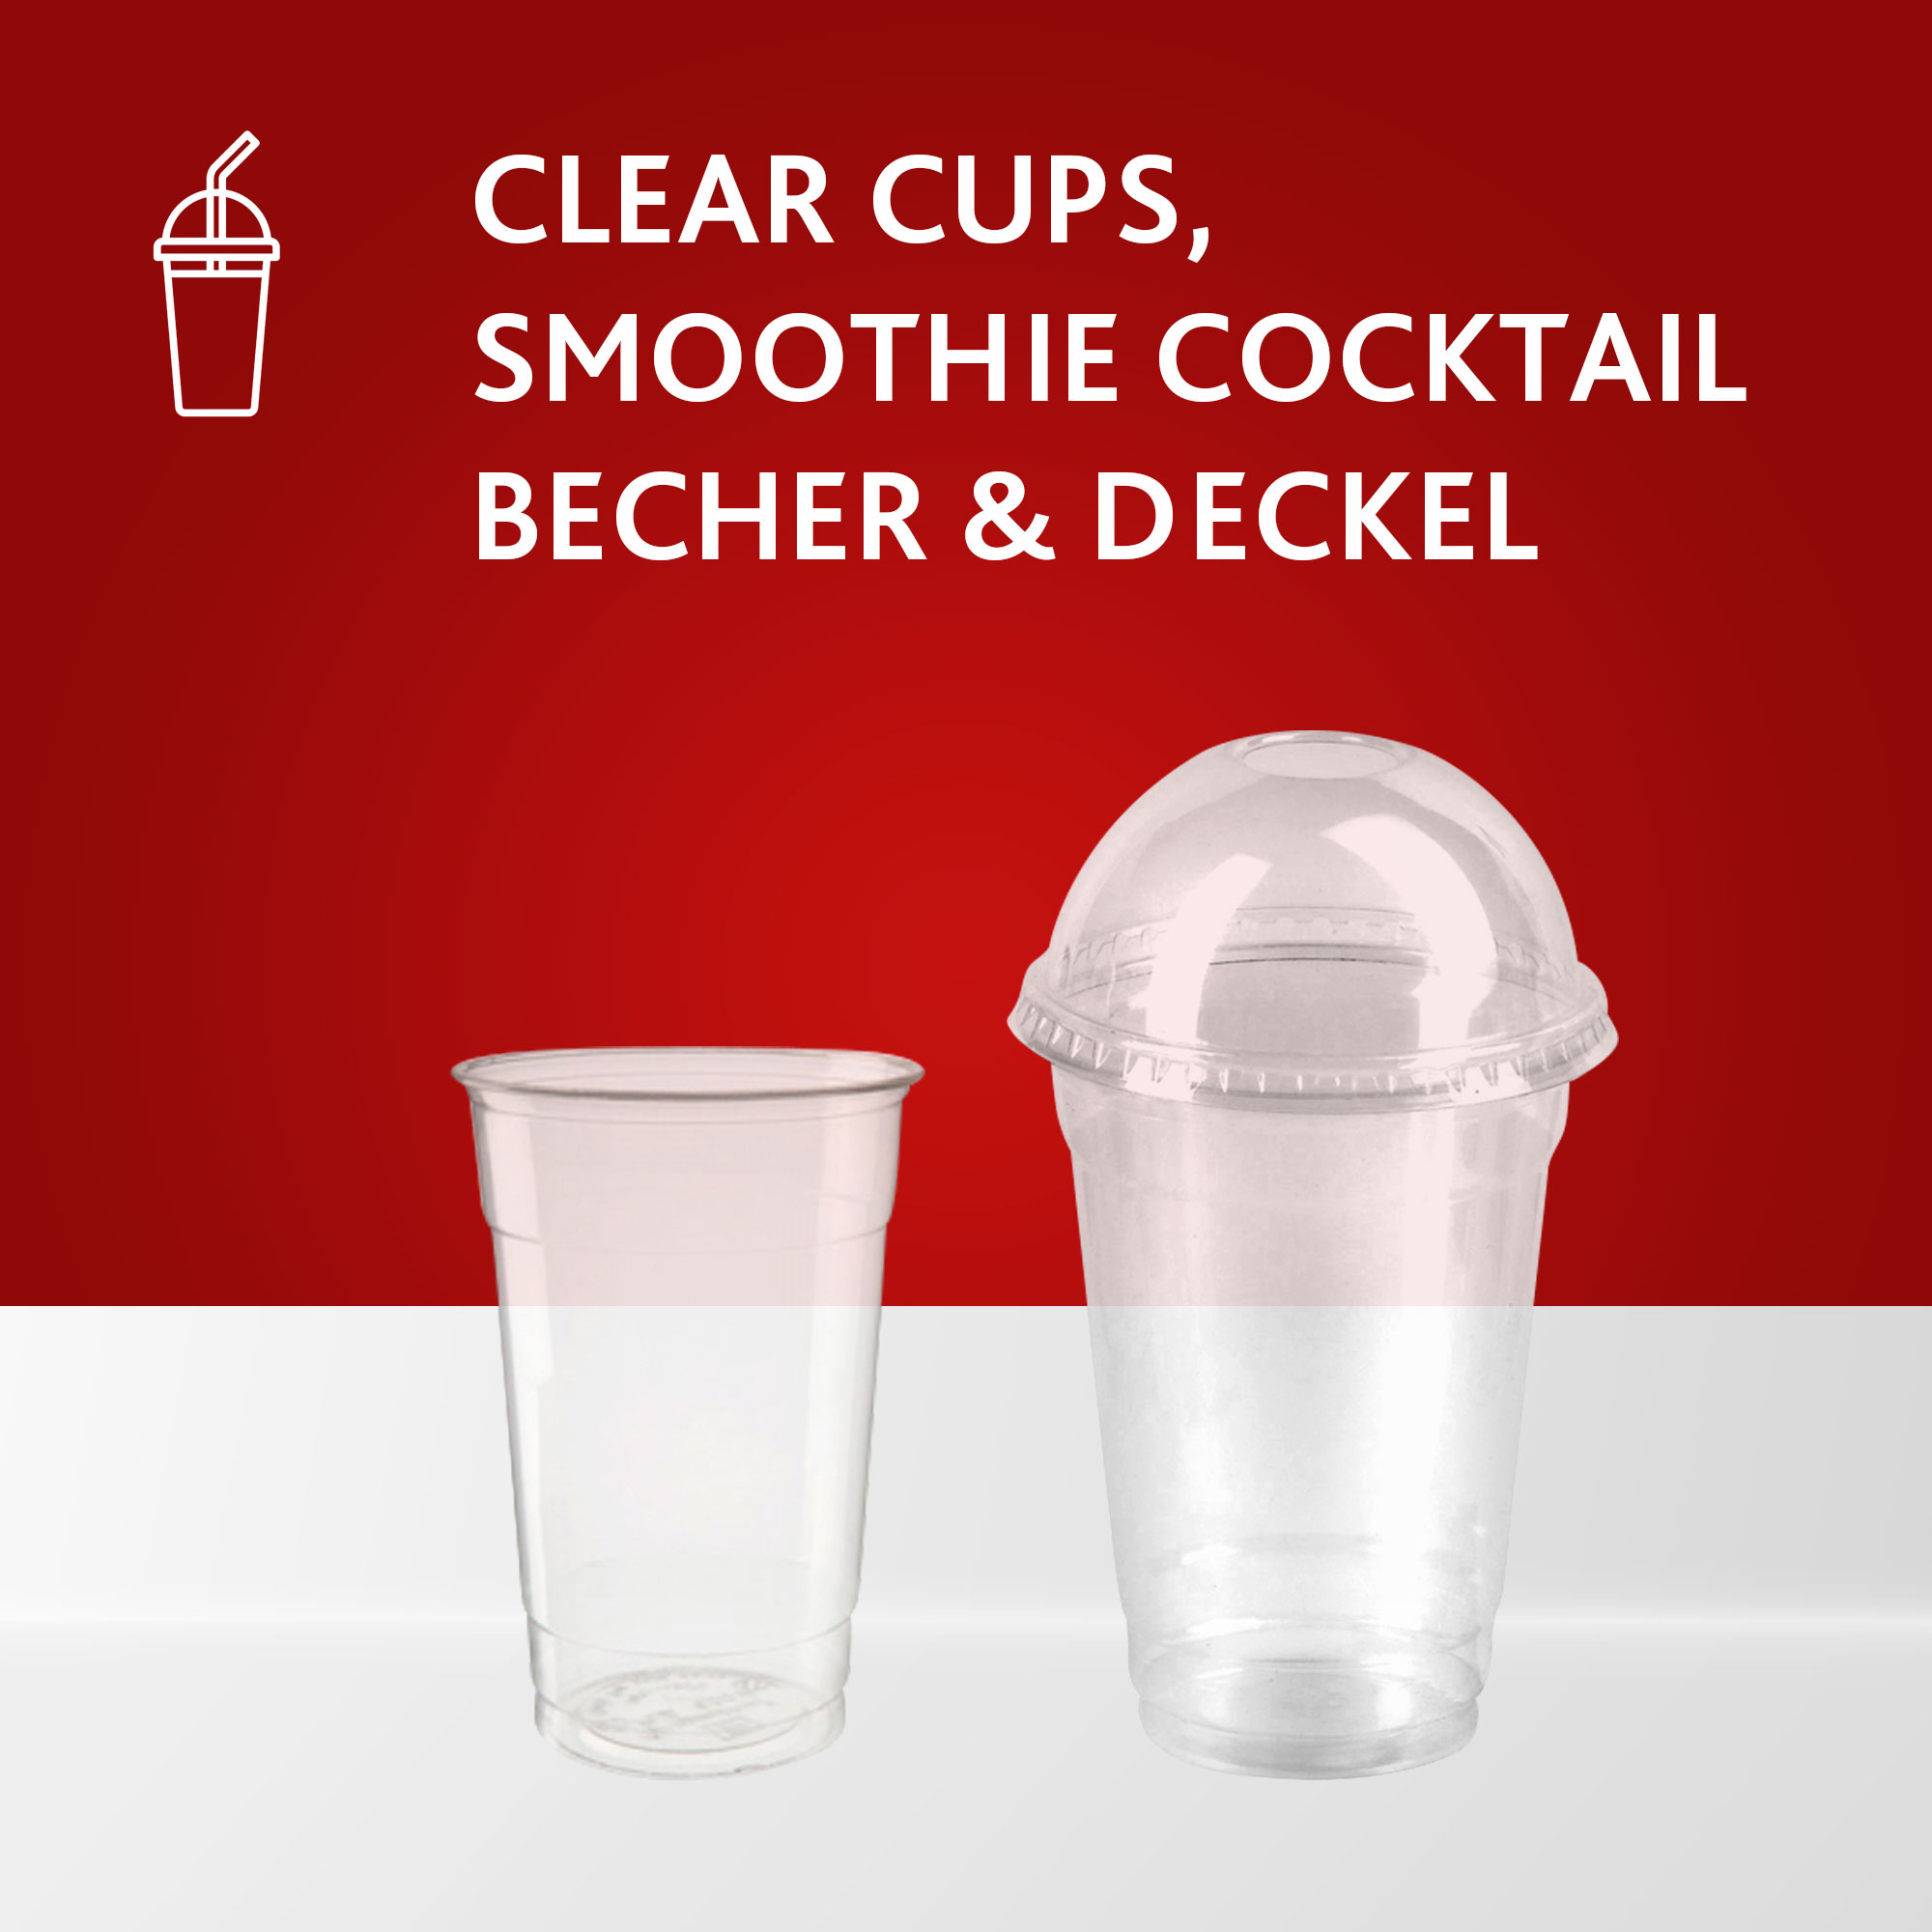 Clear Cups, Smoothie, Cocktail Becher & Decke online kaufen